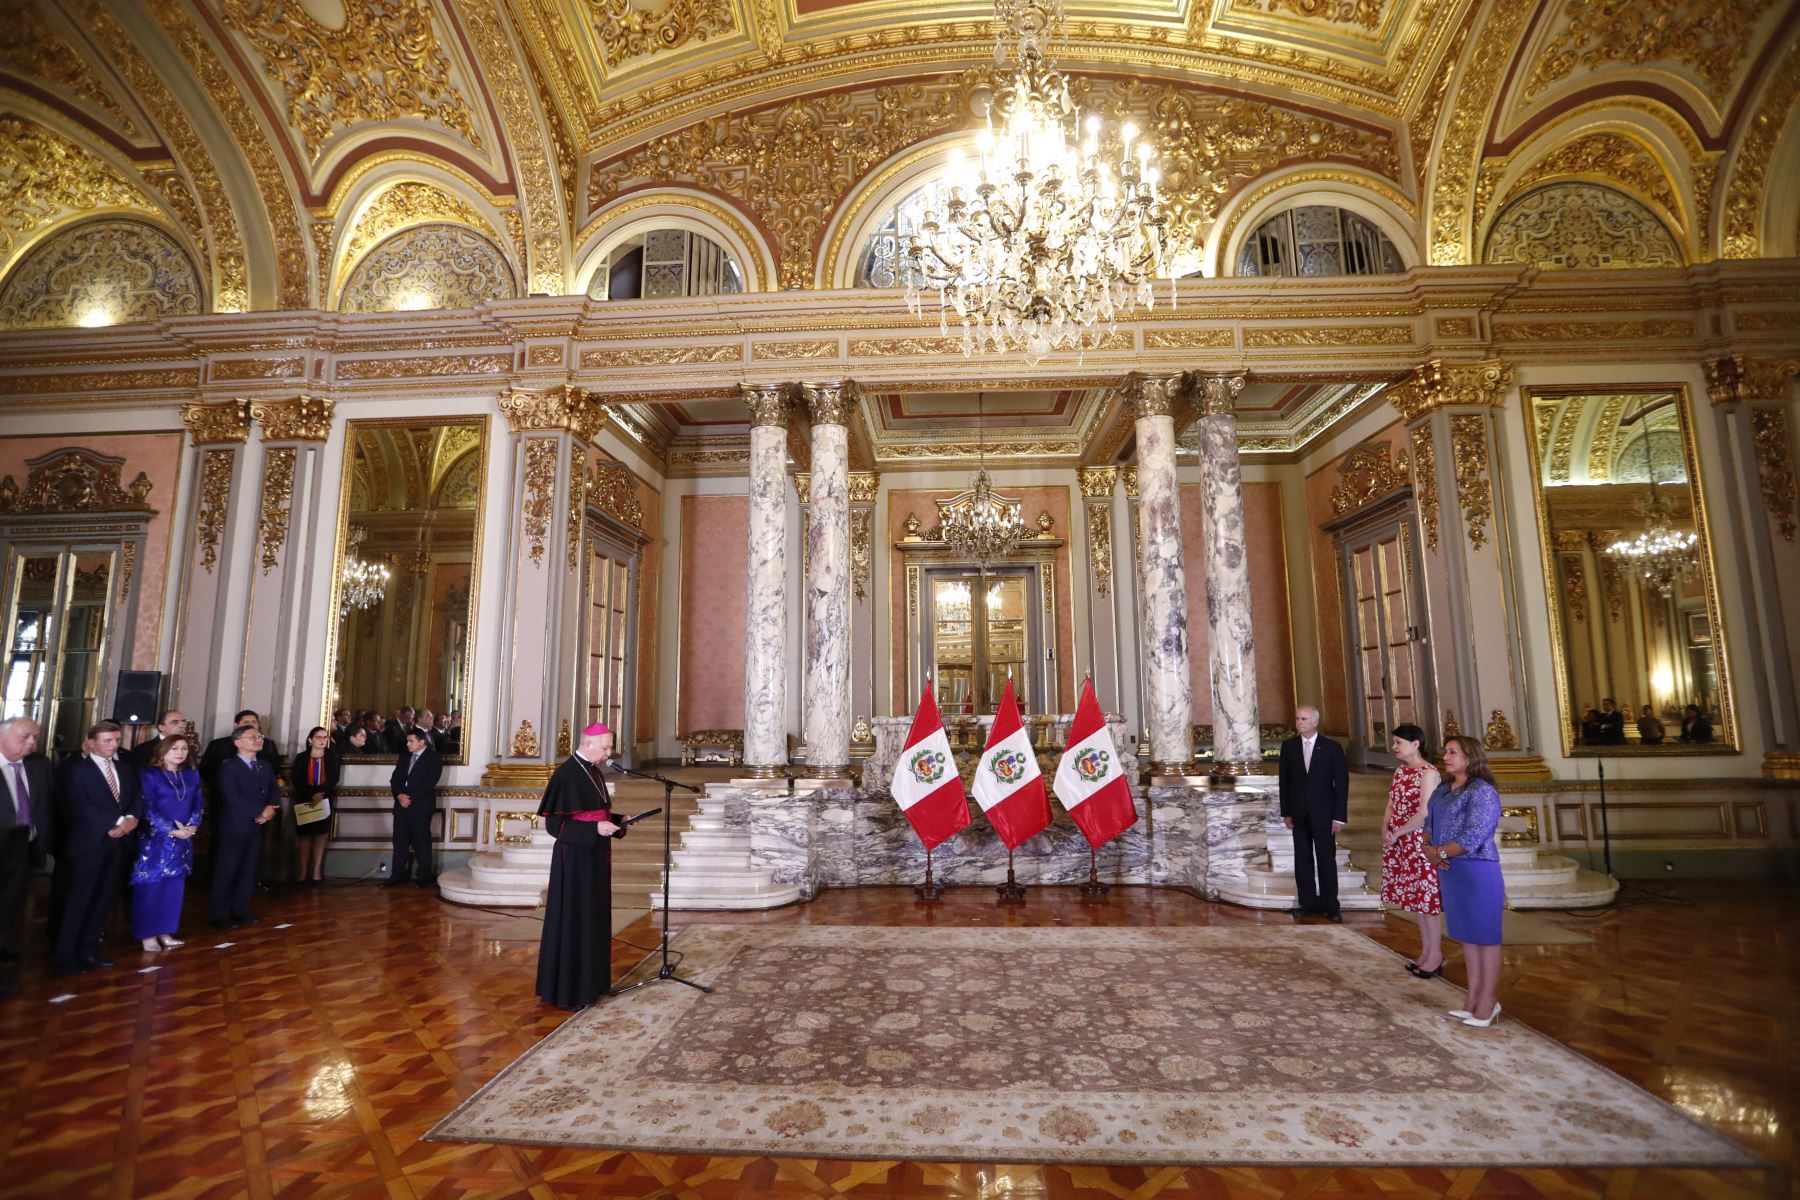 Presidenta Boluarte recibió saludo del Cuerpo Diplomático en Perú

Foto: ANDINA/Prensa Presidencia